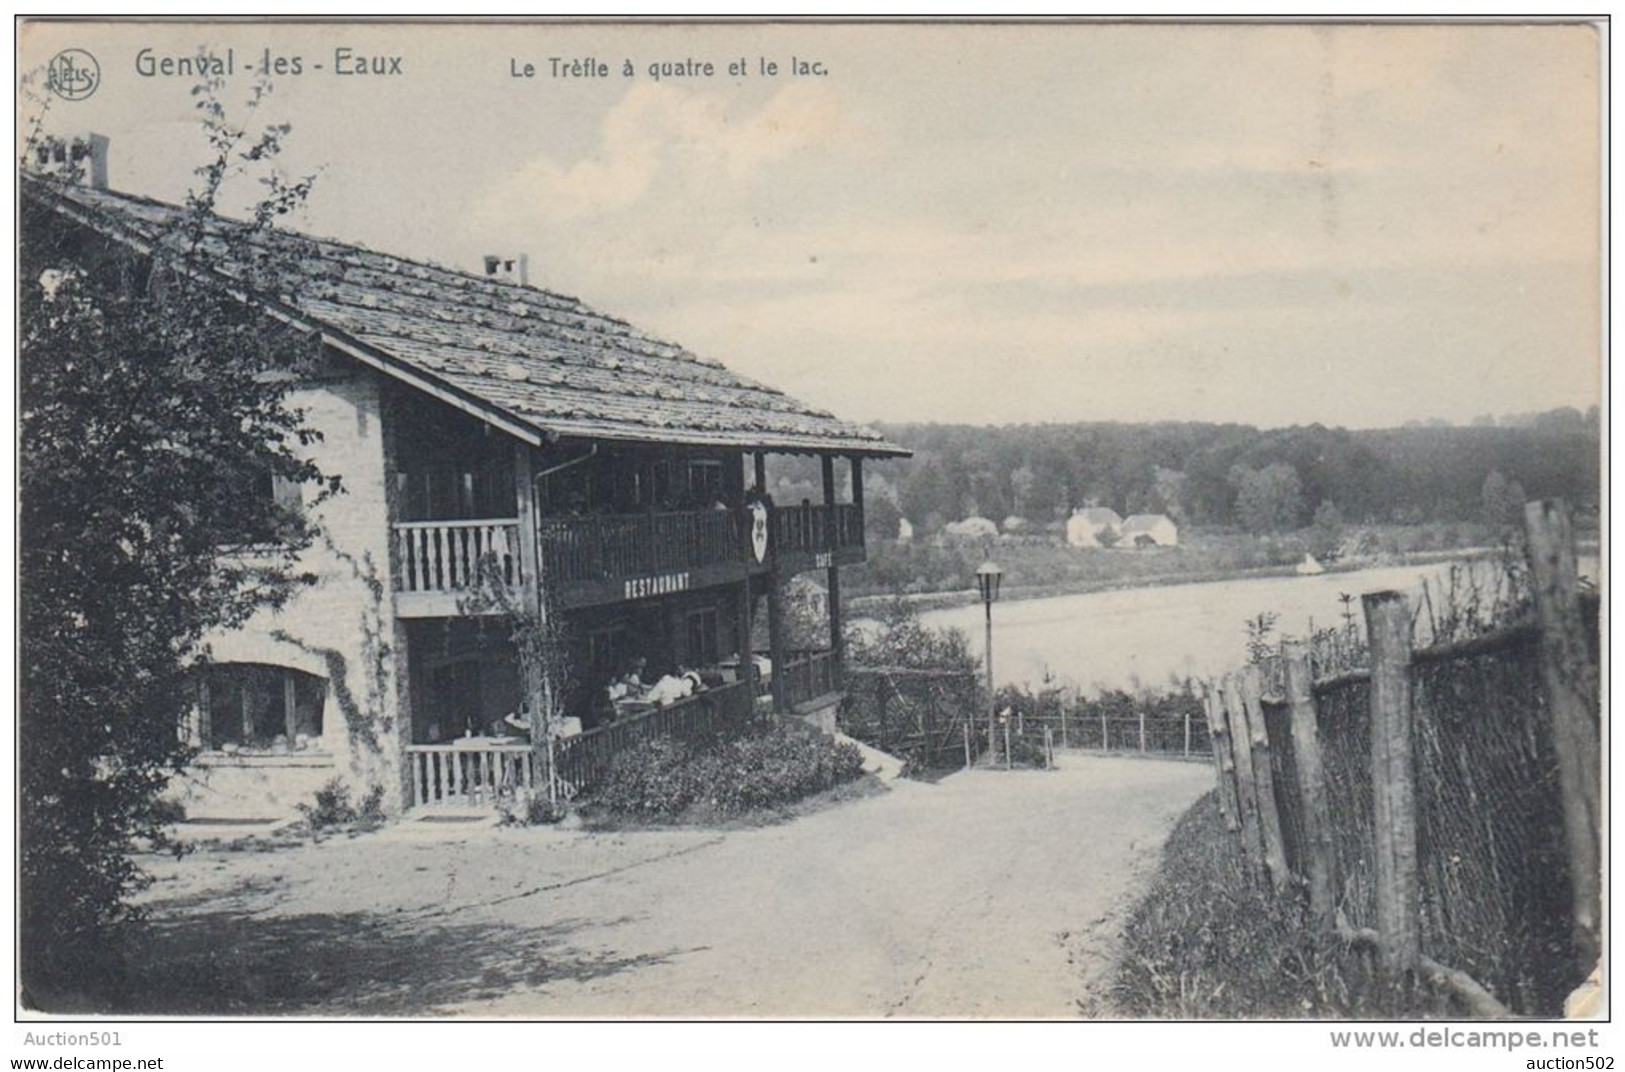 23043g RESTAURANT Le TREFLE à QUATRE - LAC - Genval-les-Eaux - 1909 - Rixensart